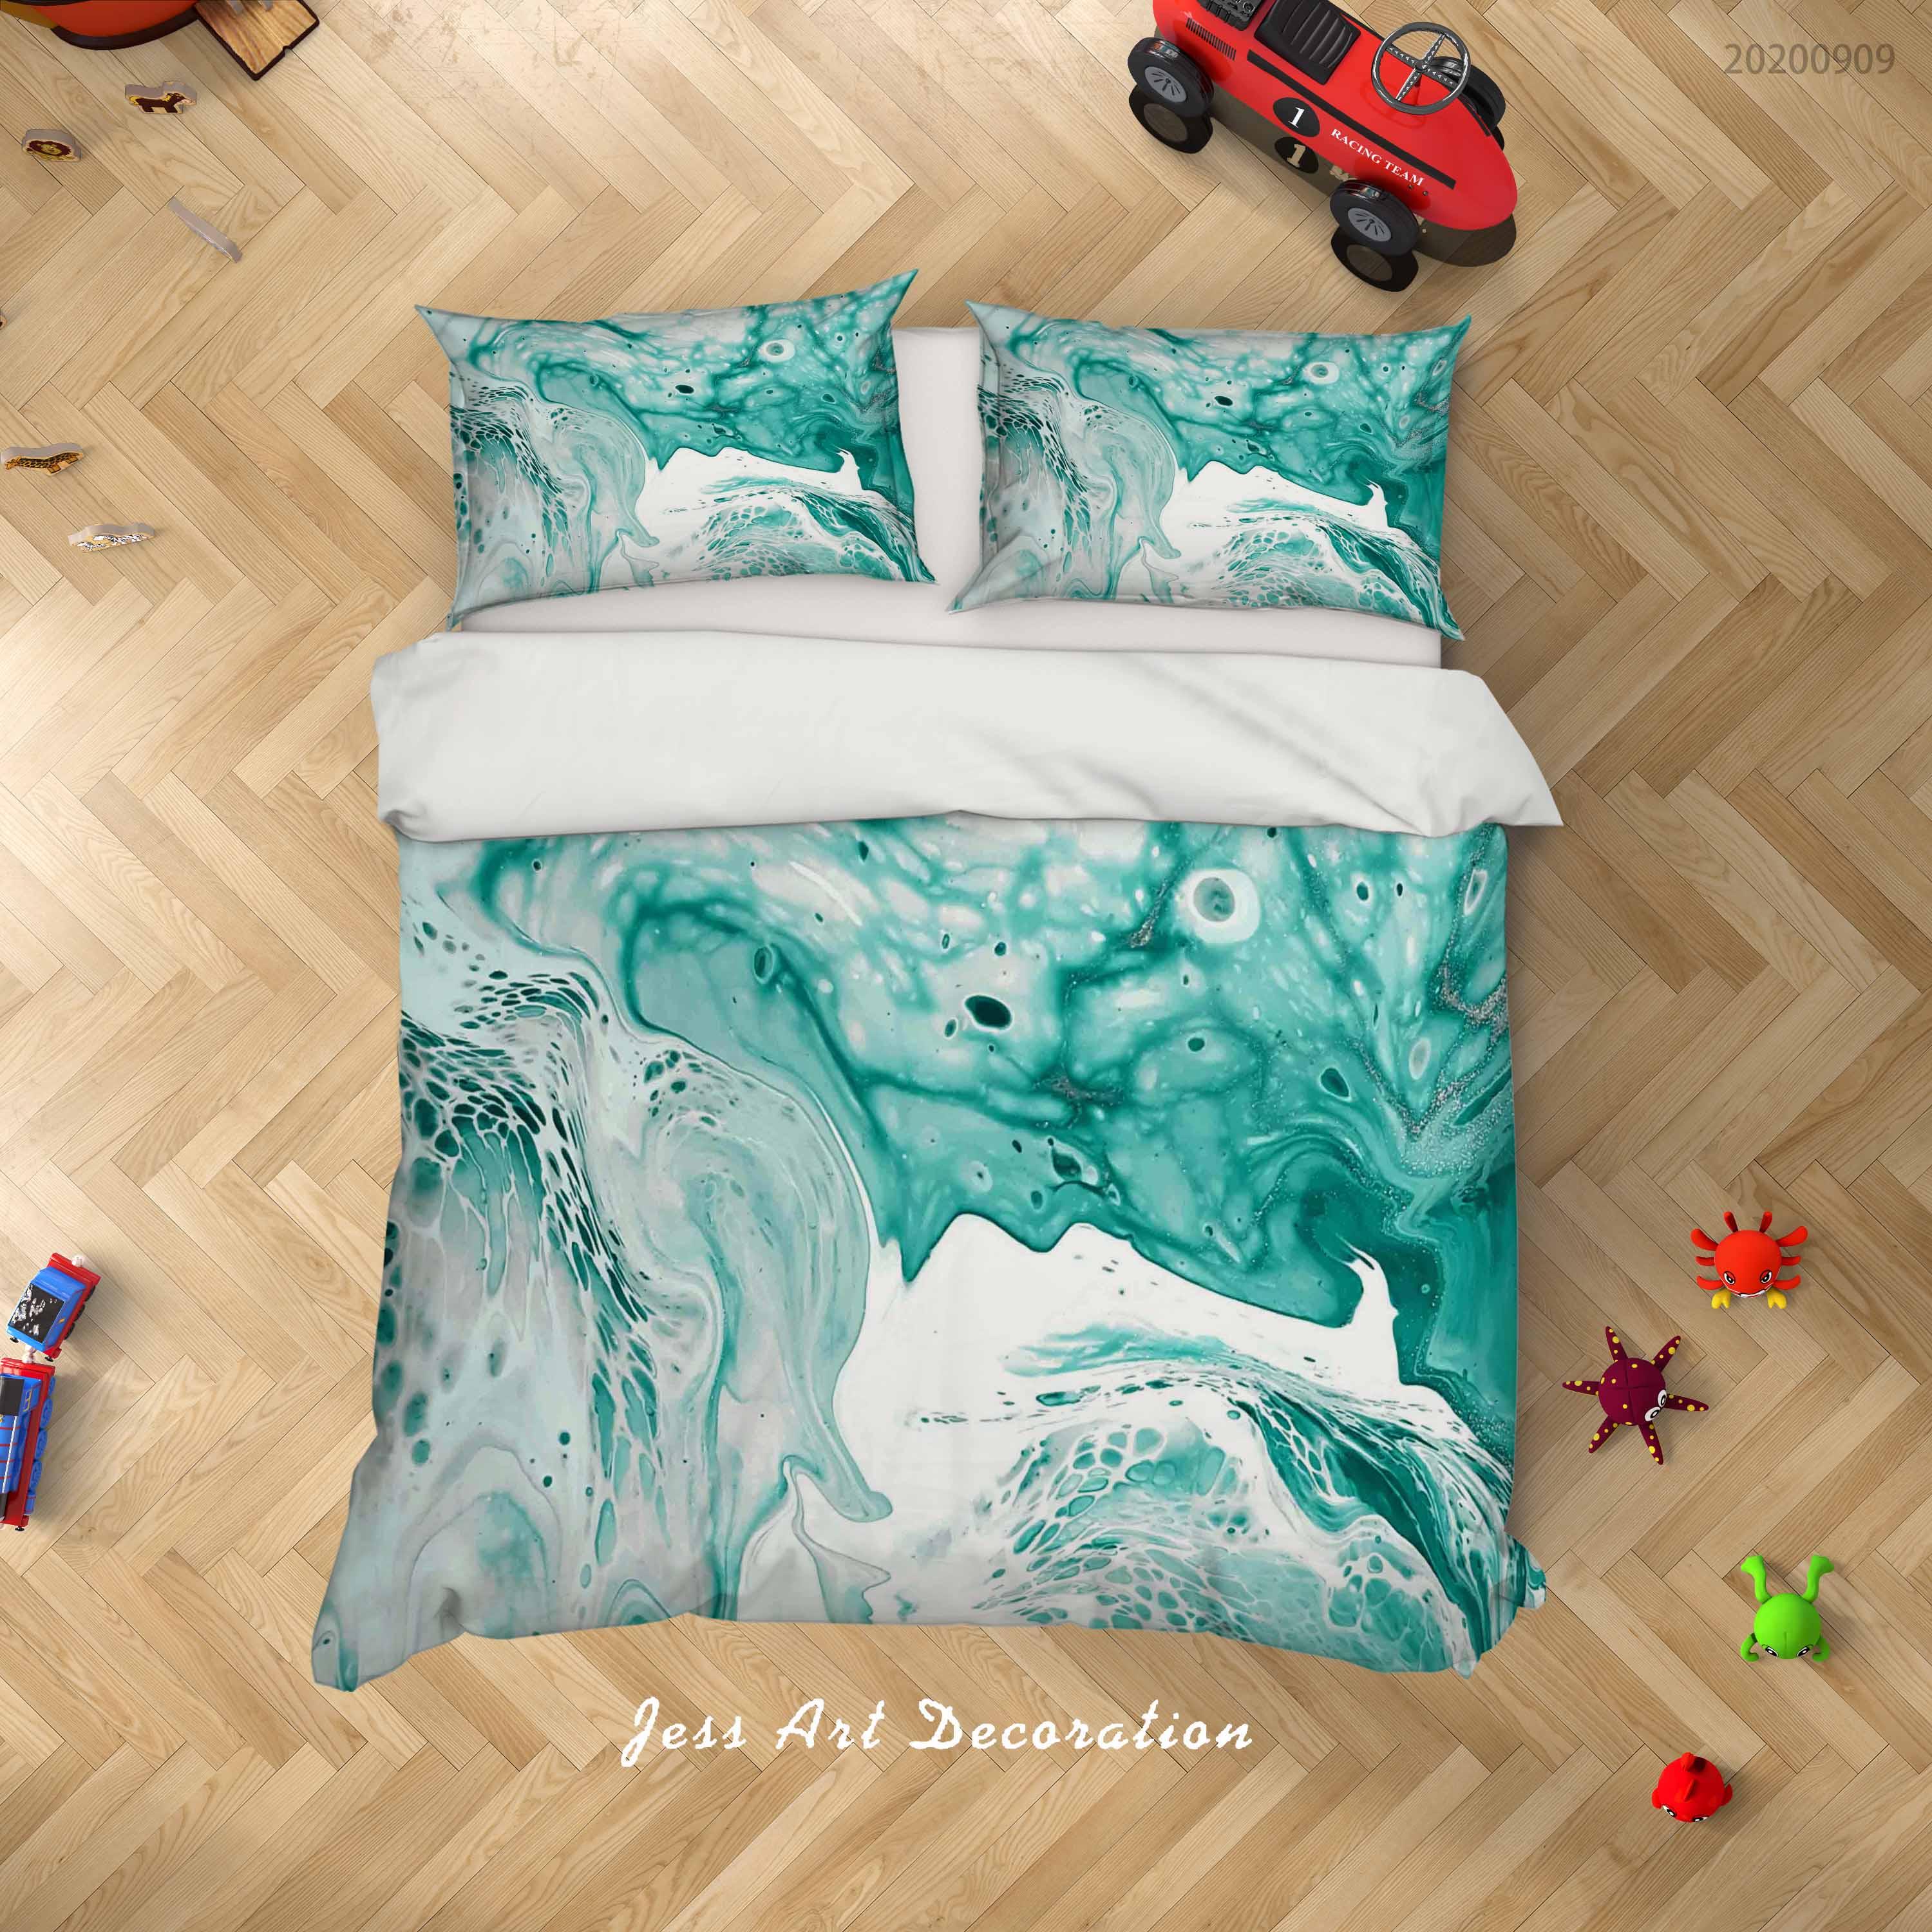 3D Papel Colorful Marmol Quilt Cover Set Bedding Set Duvet Cover Pillowcases WJ 1960- Jess Art Decoration